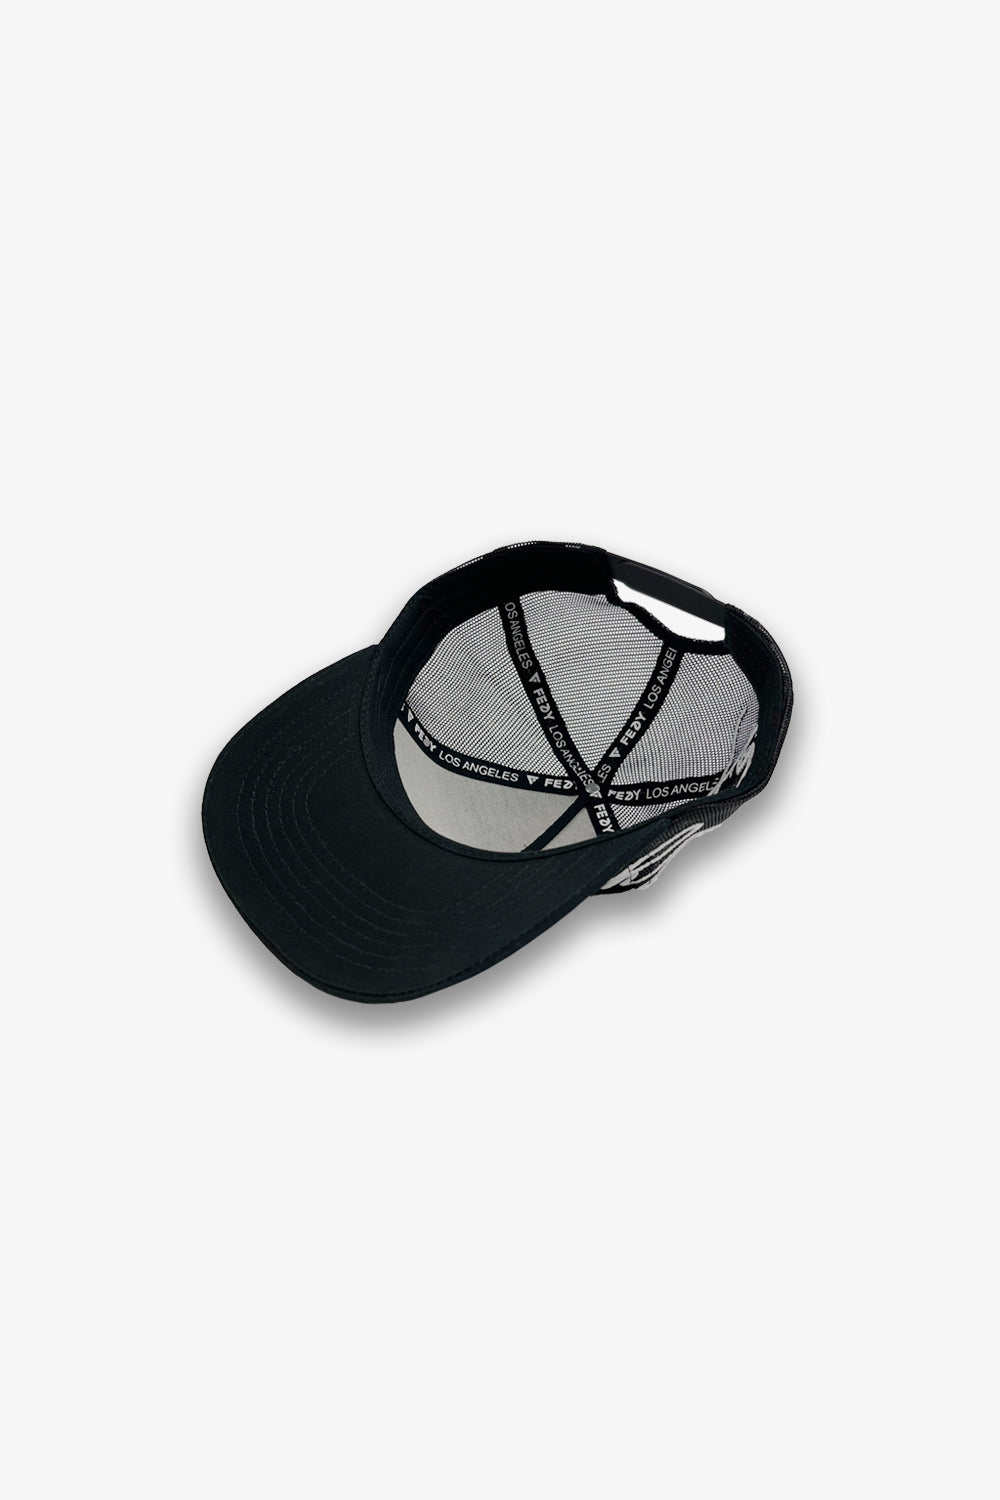 black designer trucker hat custom taping